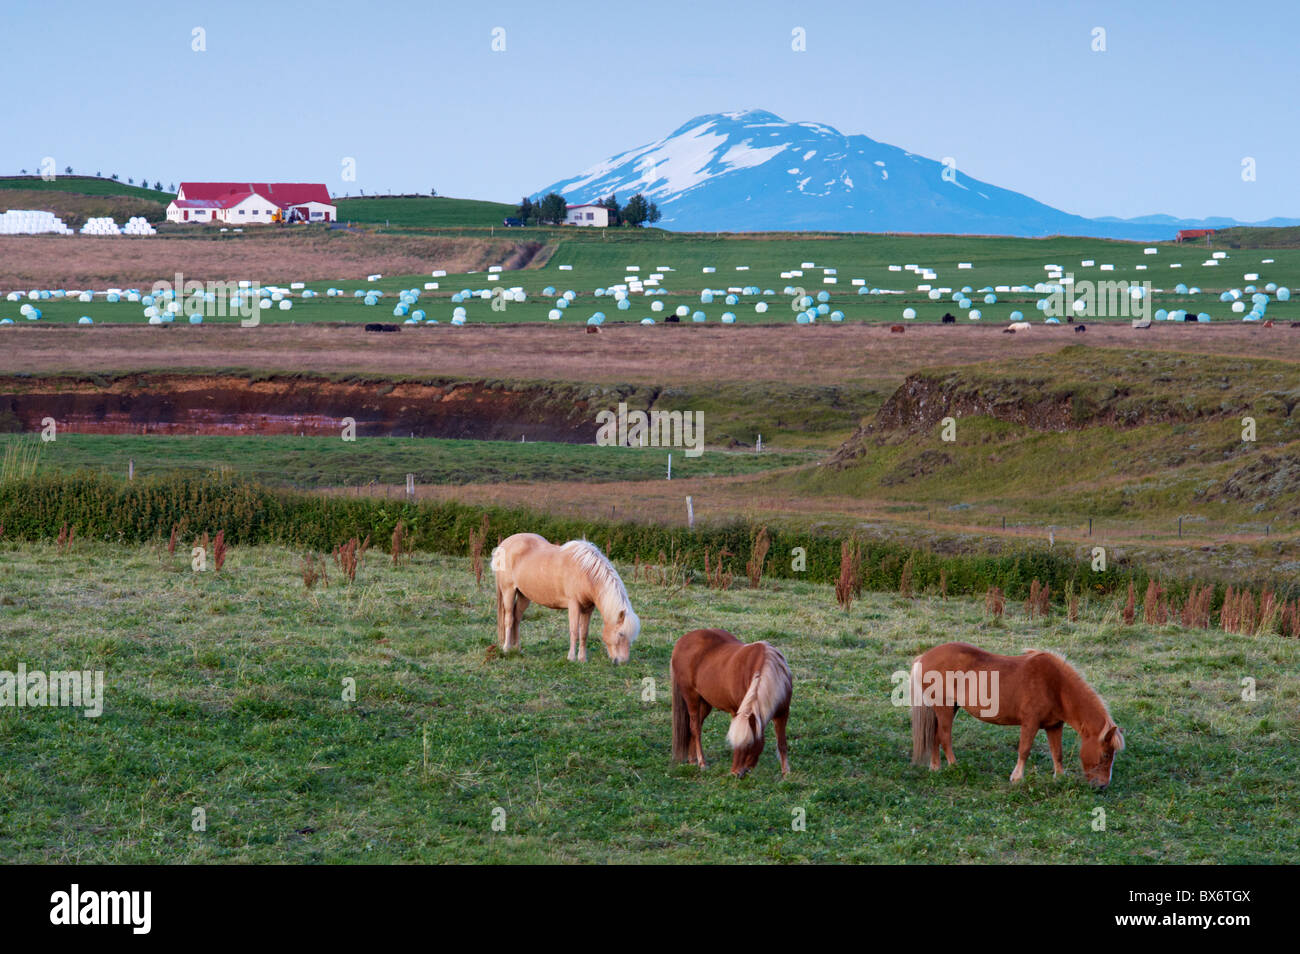 Terreni agricoli ai piedi dell'imponente vulcano Hekla, a nord di Hella, nel sud dell'Islanda (Sudurland), Islanda Foto Stock